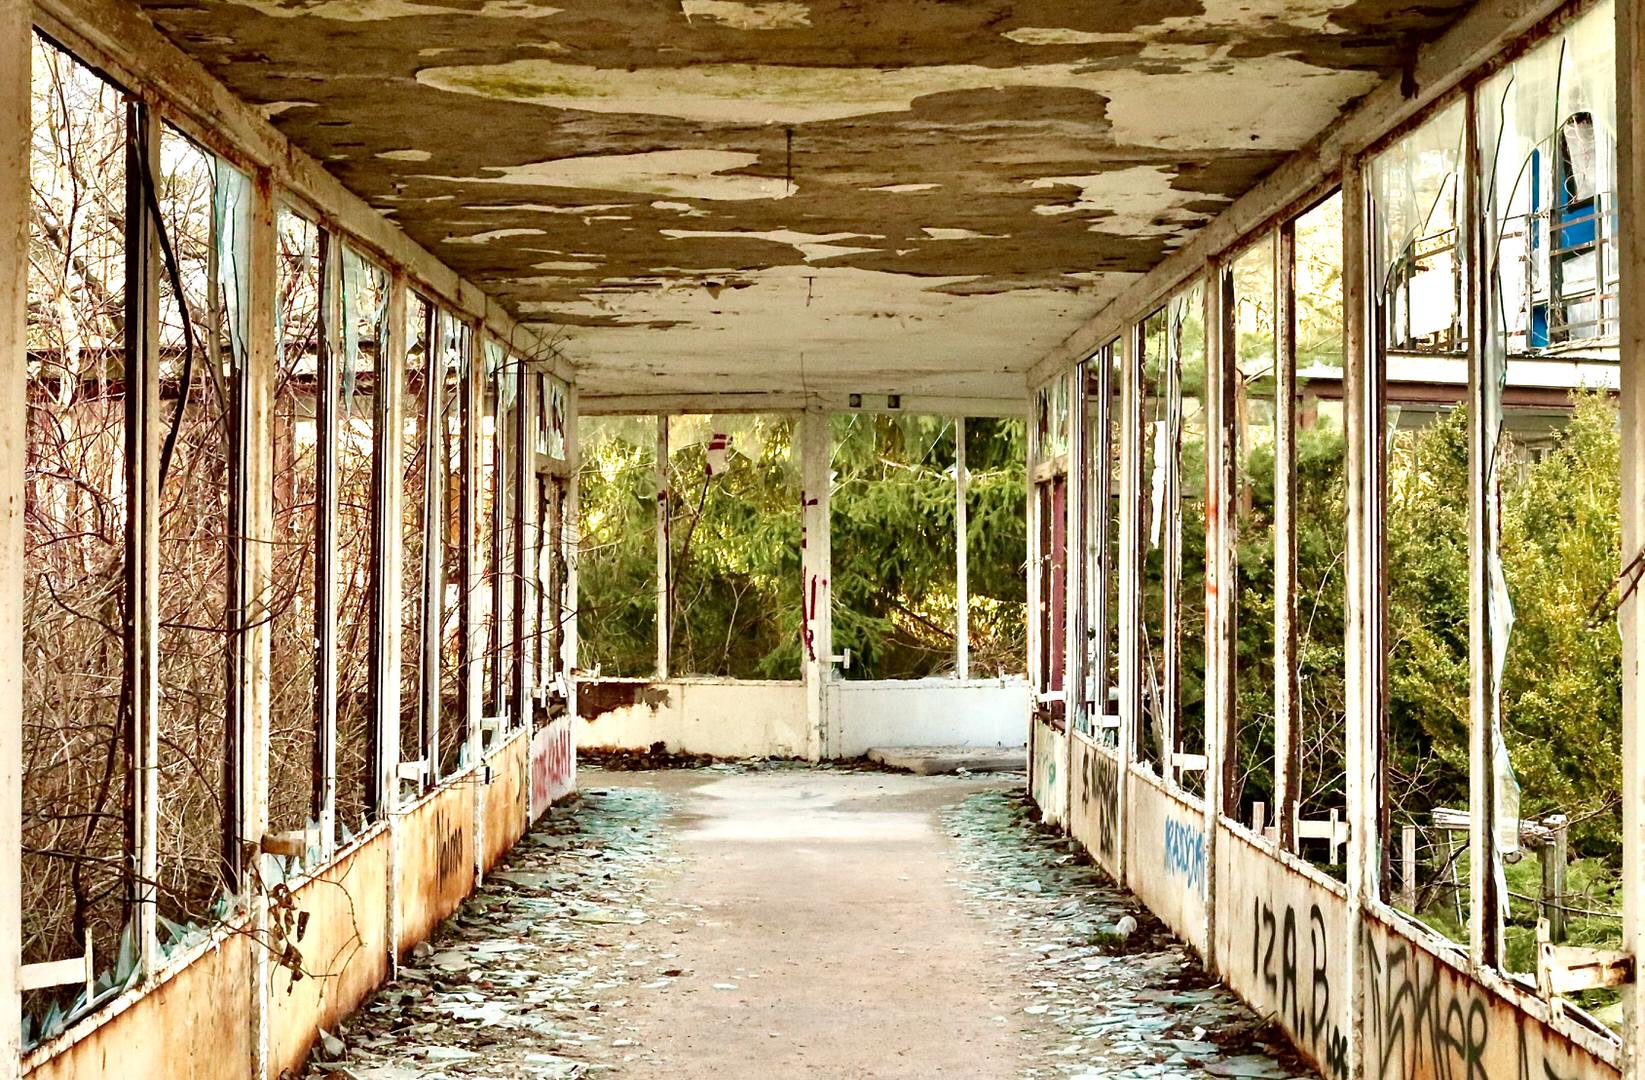 A corridor through an abandoned building